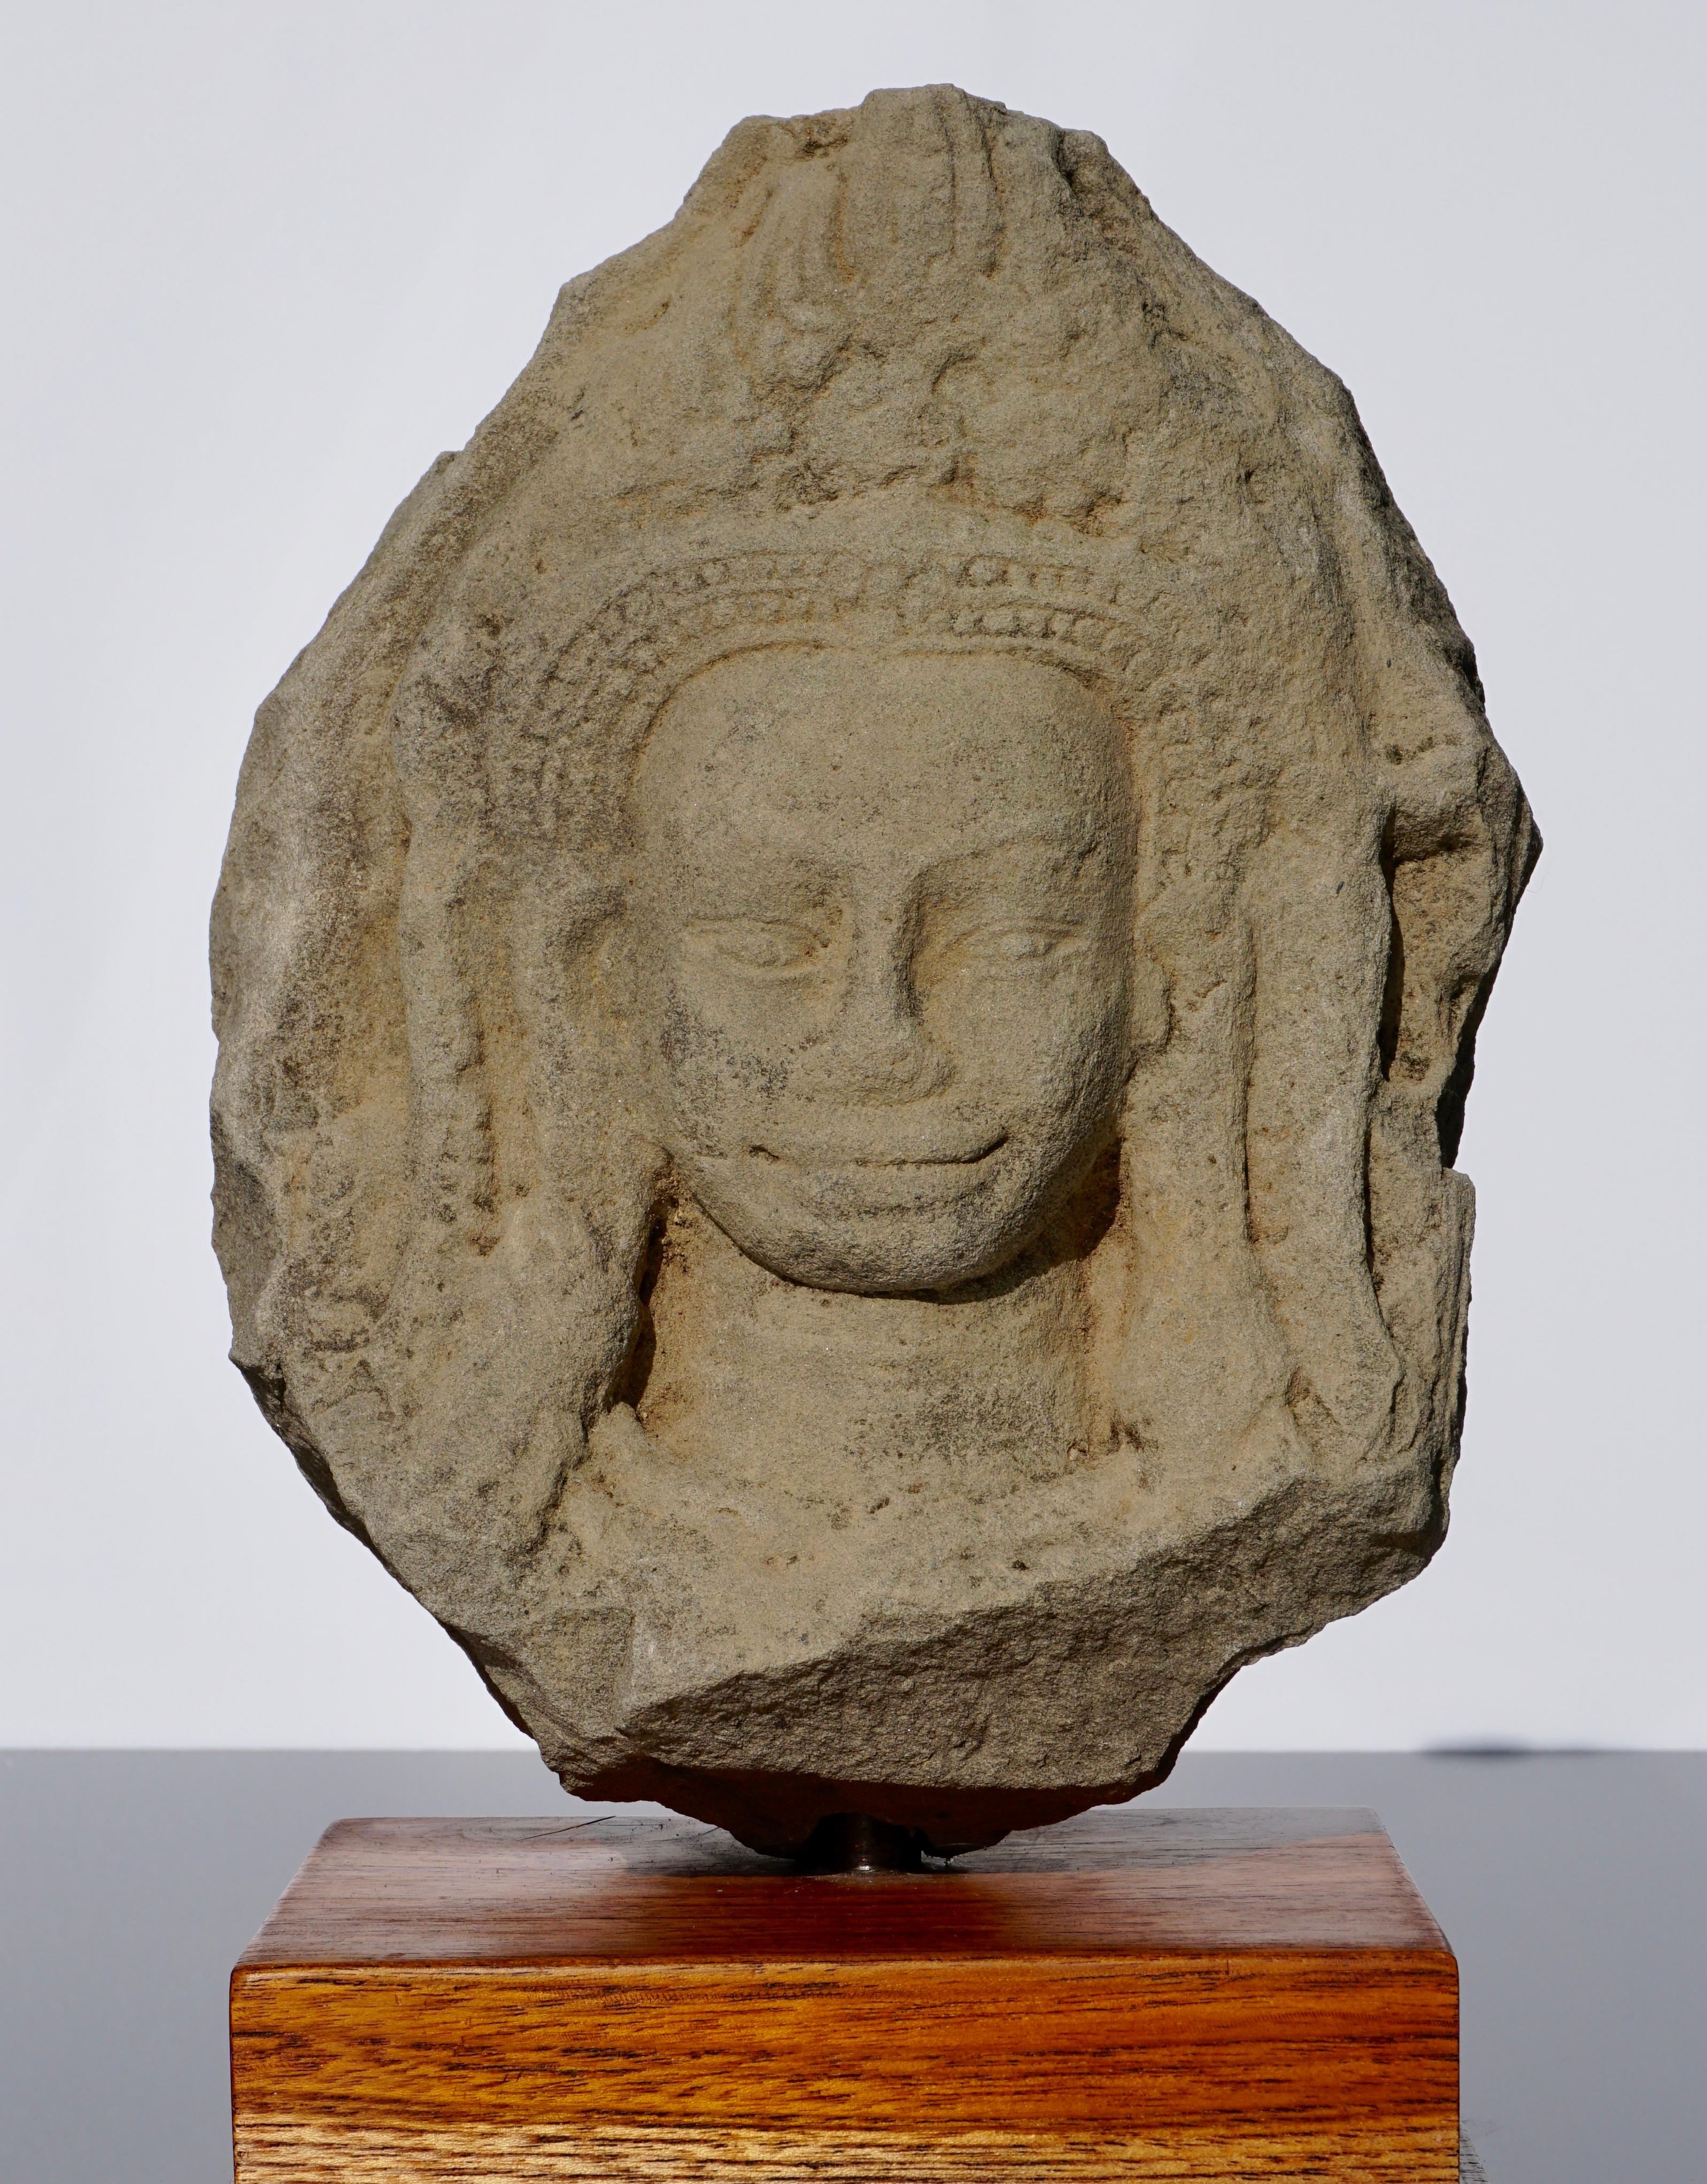 Grande tête en grès attribuée à Angkor Wat, représentant une Apsara avec une couronne de flammes ornée. Monté sur une base en bois, 12ème siècle.

Mesures : Hauteur 11 x 9 pouces
Avec support 34 cm (13,3 pouces)

Provenance : Provenant d'une vente